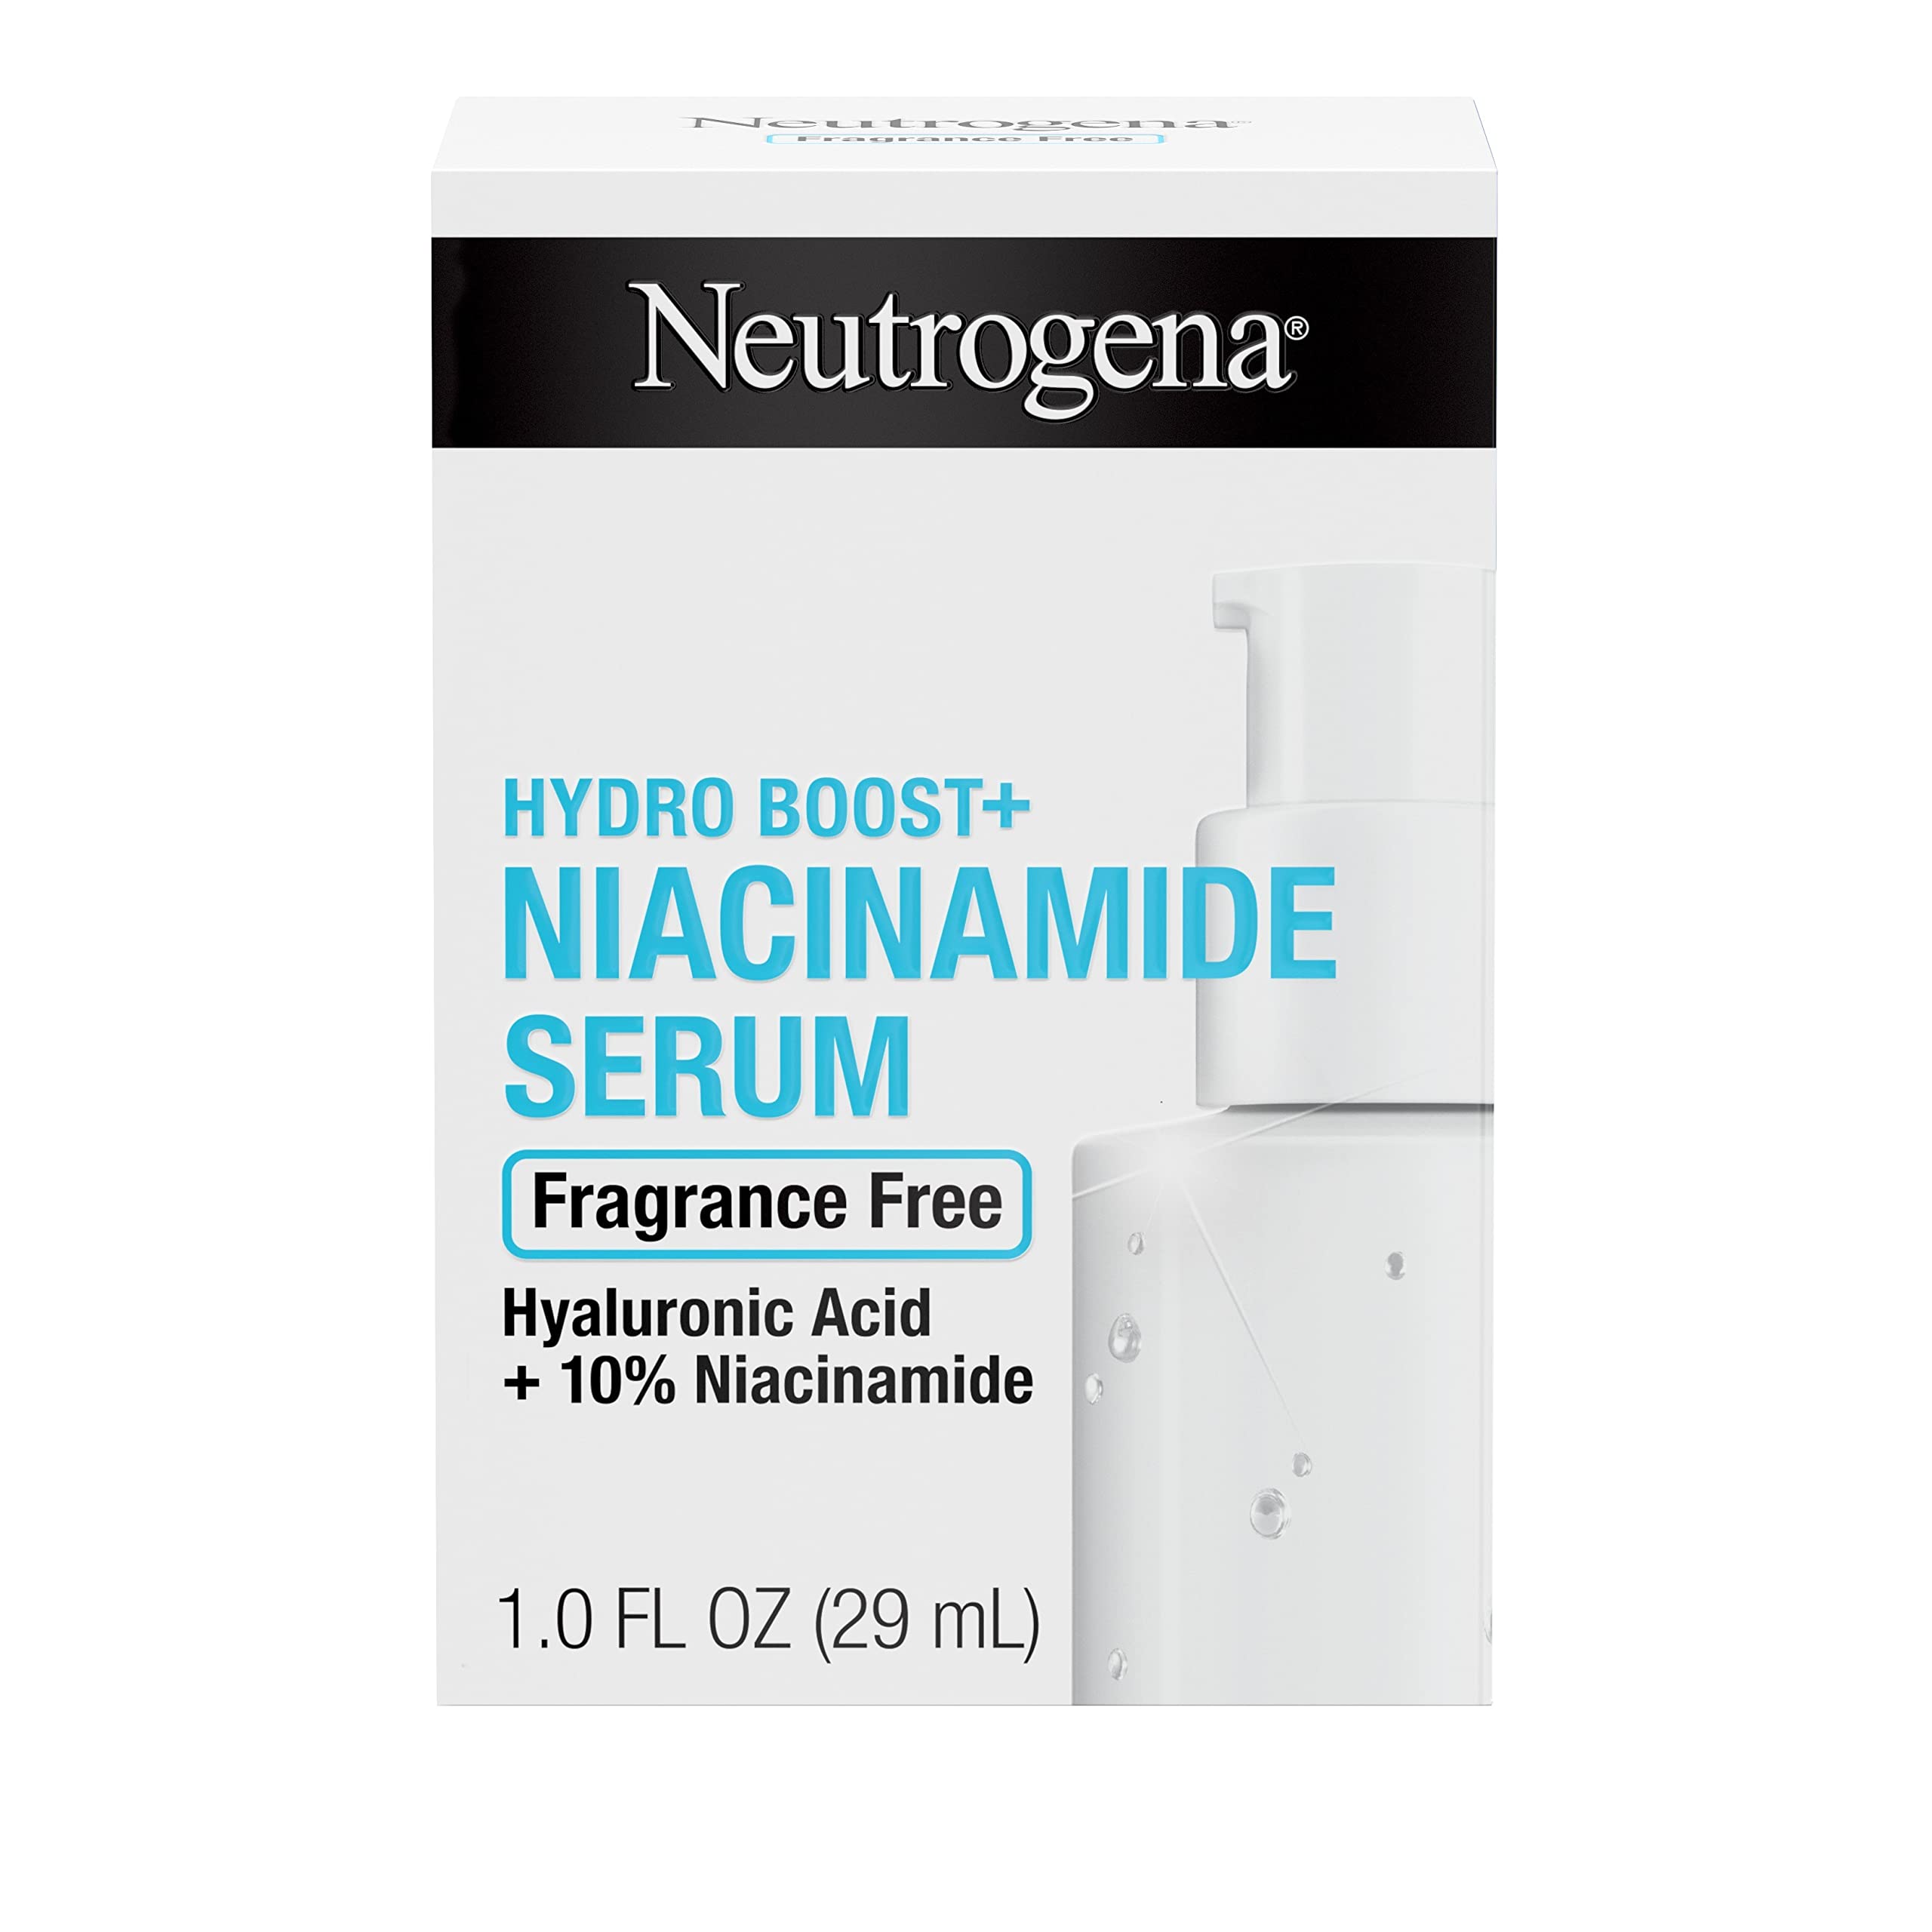 Neutrogena Hydro Boost Multi Action + 10% de niacinamida sérum facial hidratante com vitamina B3 e ácido hialurônico para melhorar o tom irregular e a pele opaca, sem fragrância, 10% de niacinamida, 1 fl.oz